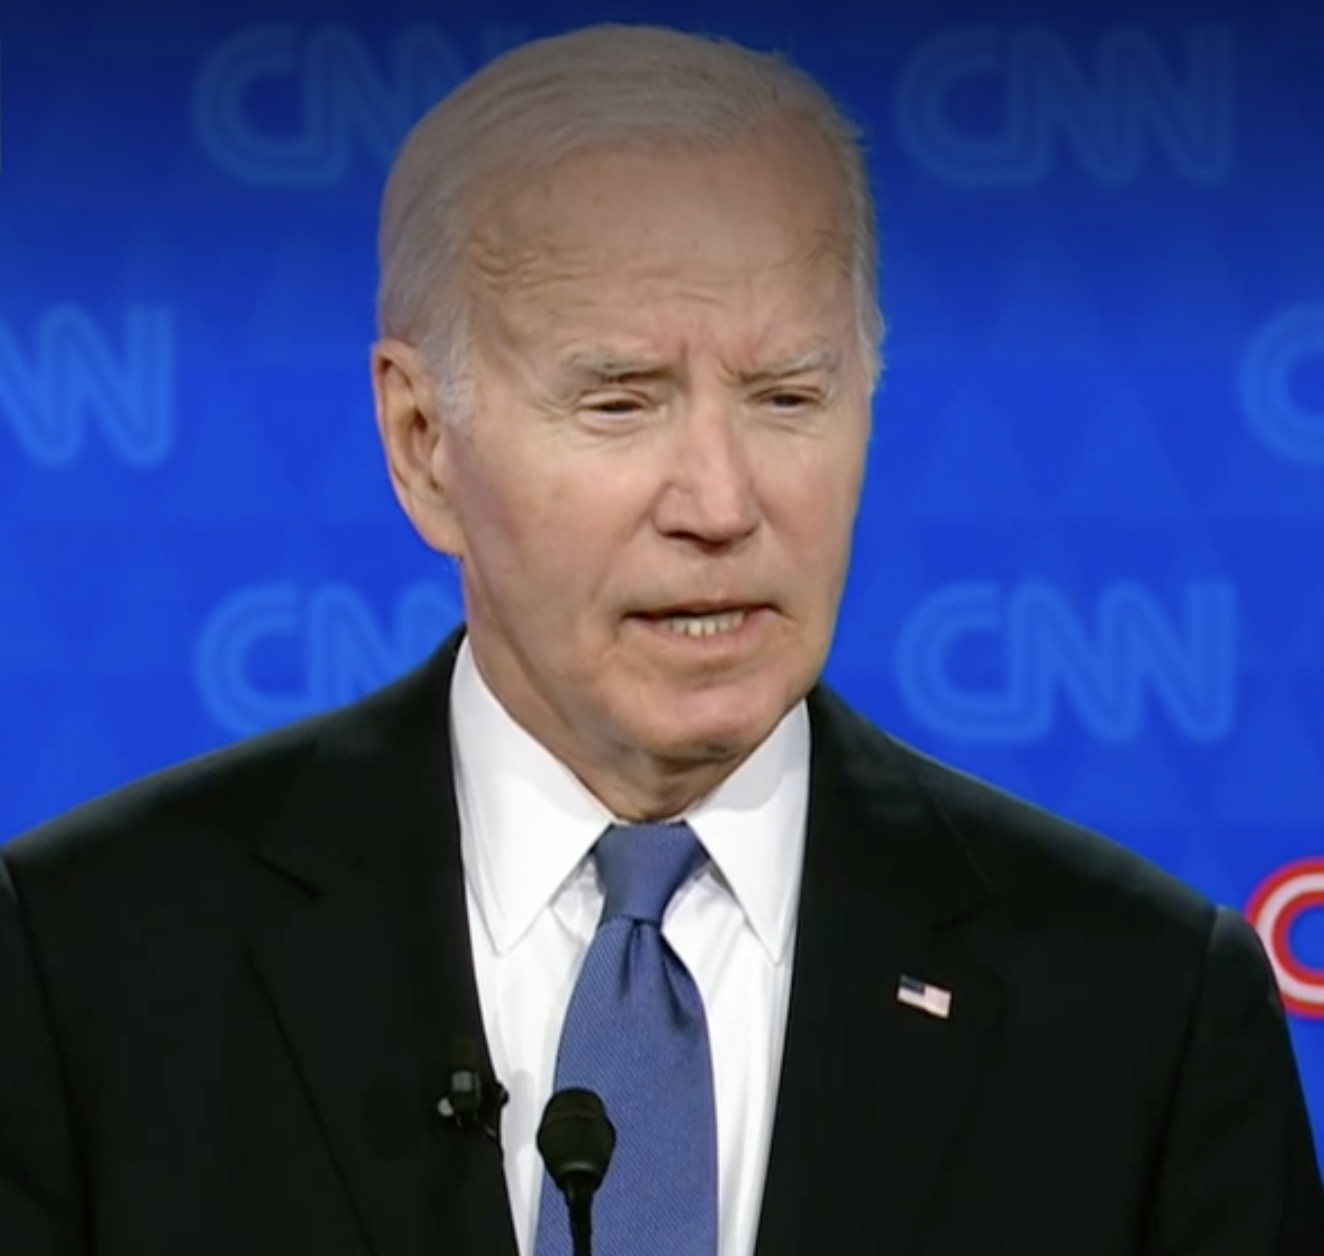 Biden on debate stage